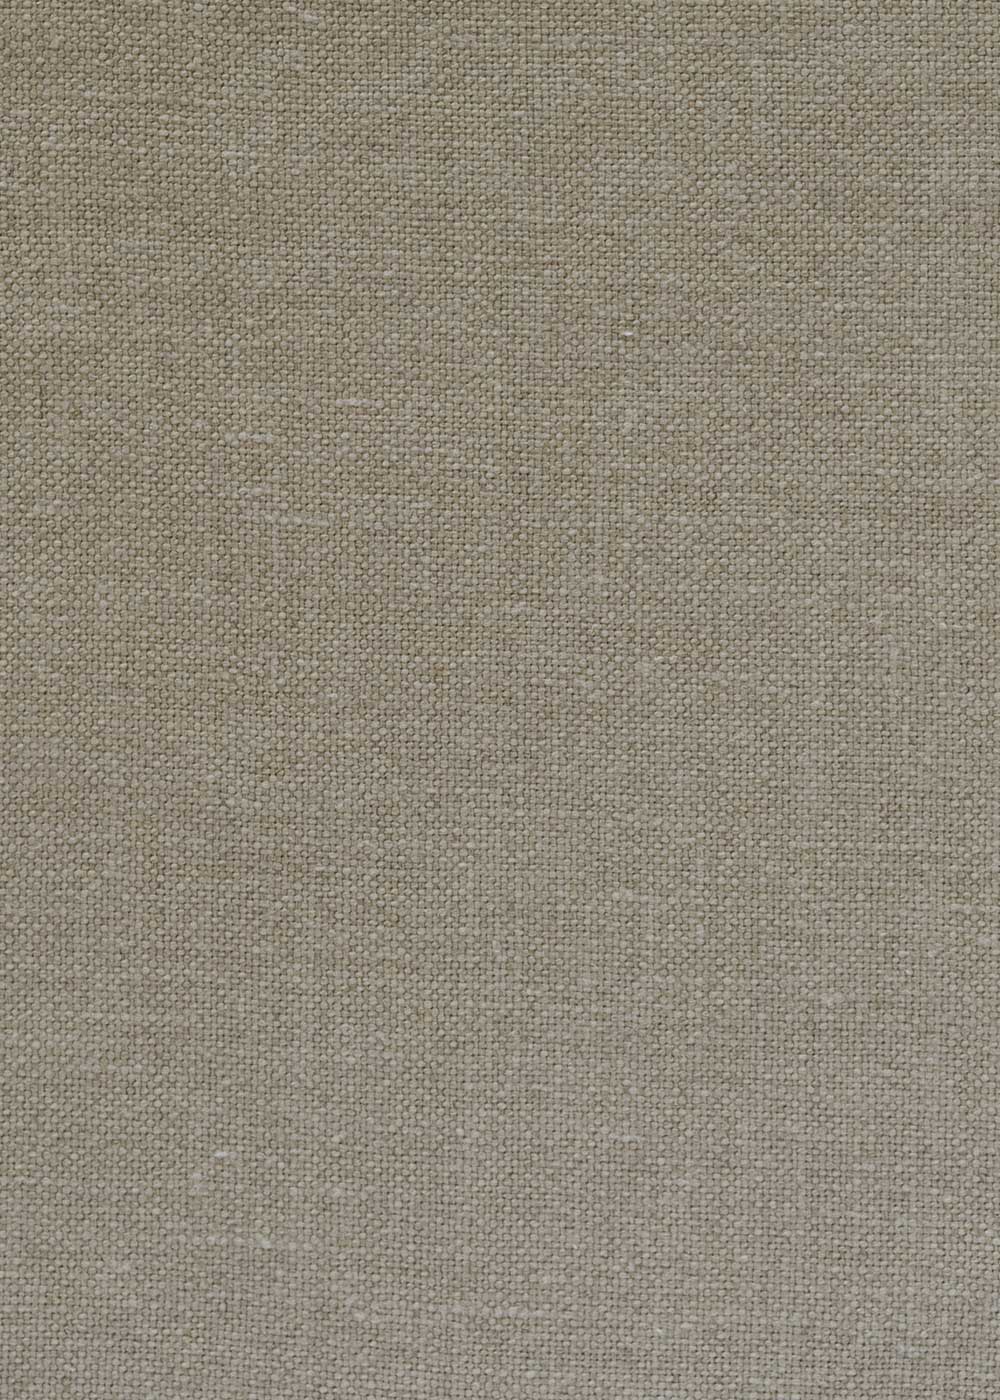 plain linen fabric in beige